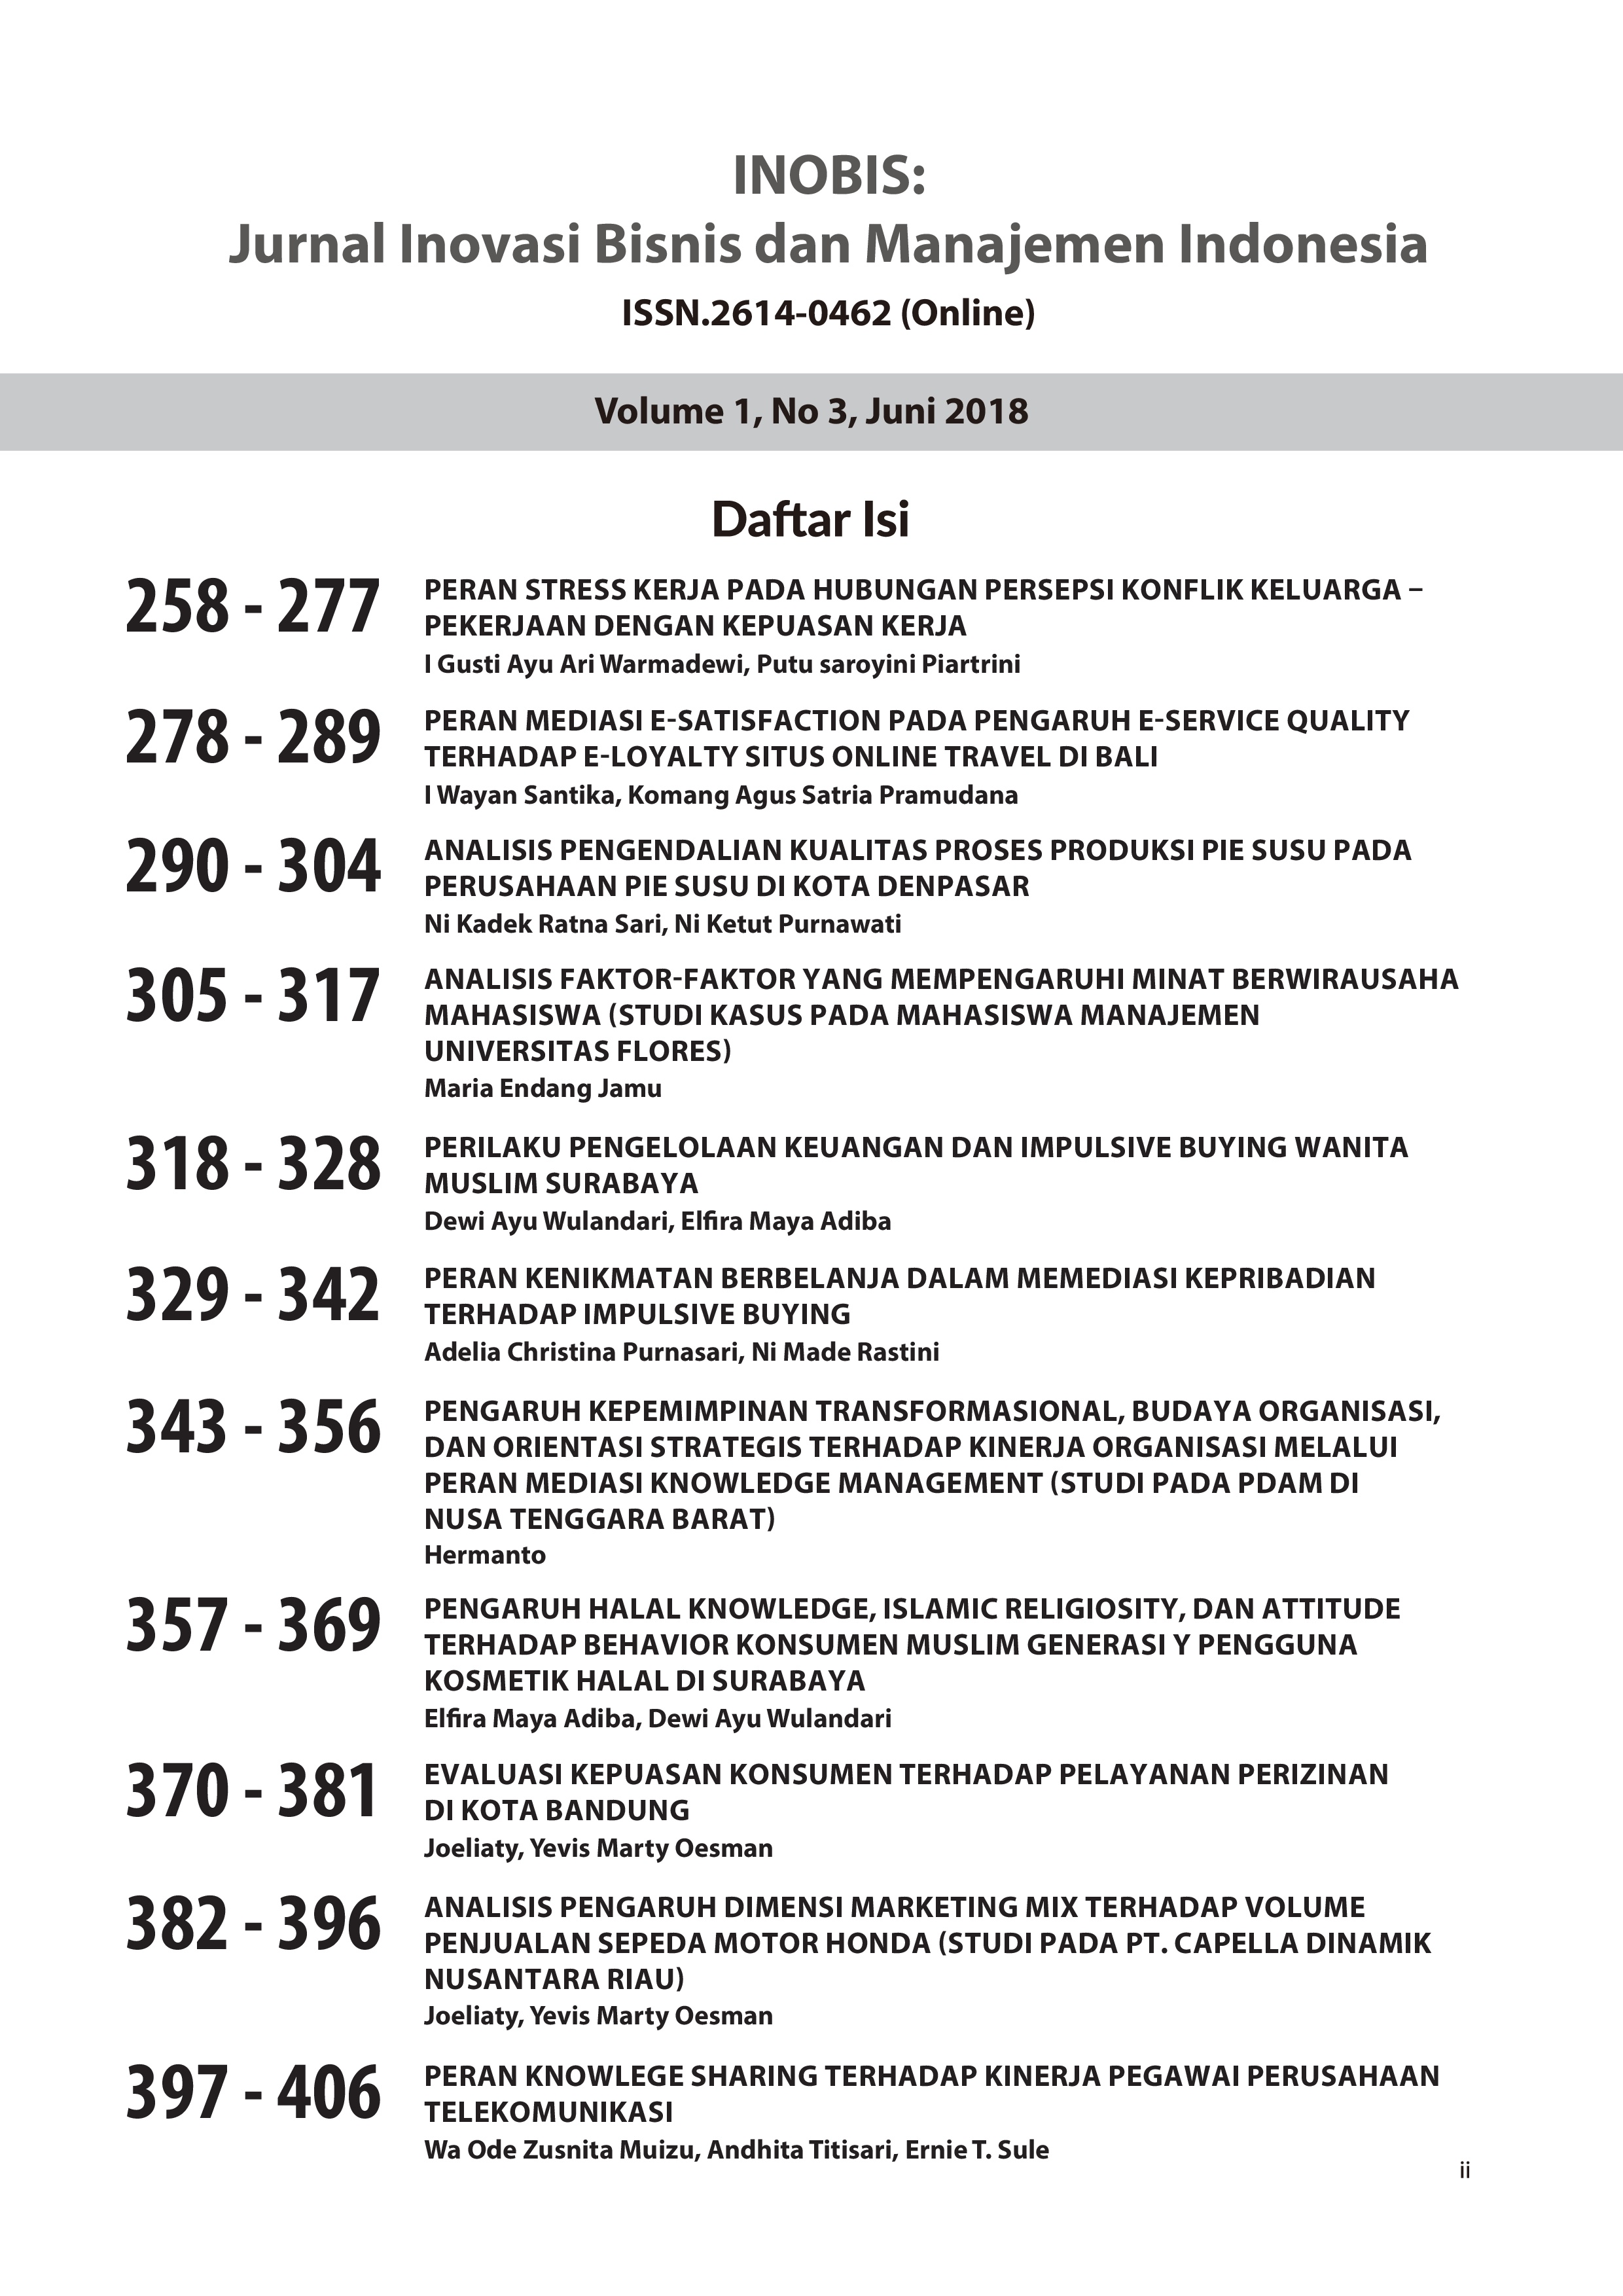 					View Vol. 1 No. 3 (2018): INOBIS: Jurnal Inovasi Bisnis dan Manajemen Indonesia - Edisi Juni 2018
				